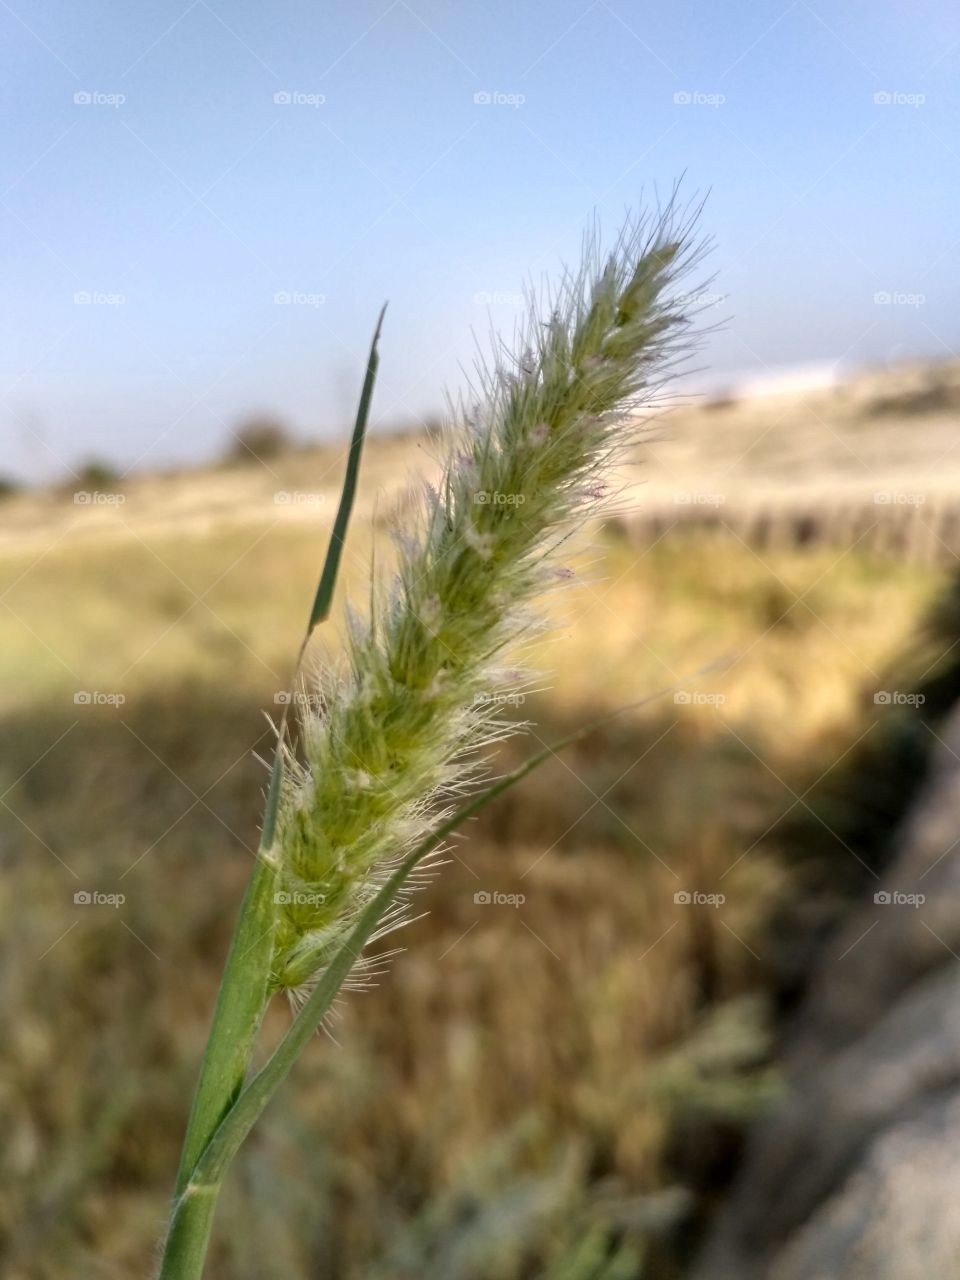 Grain flower